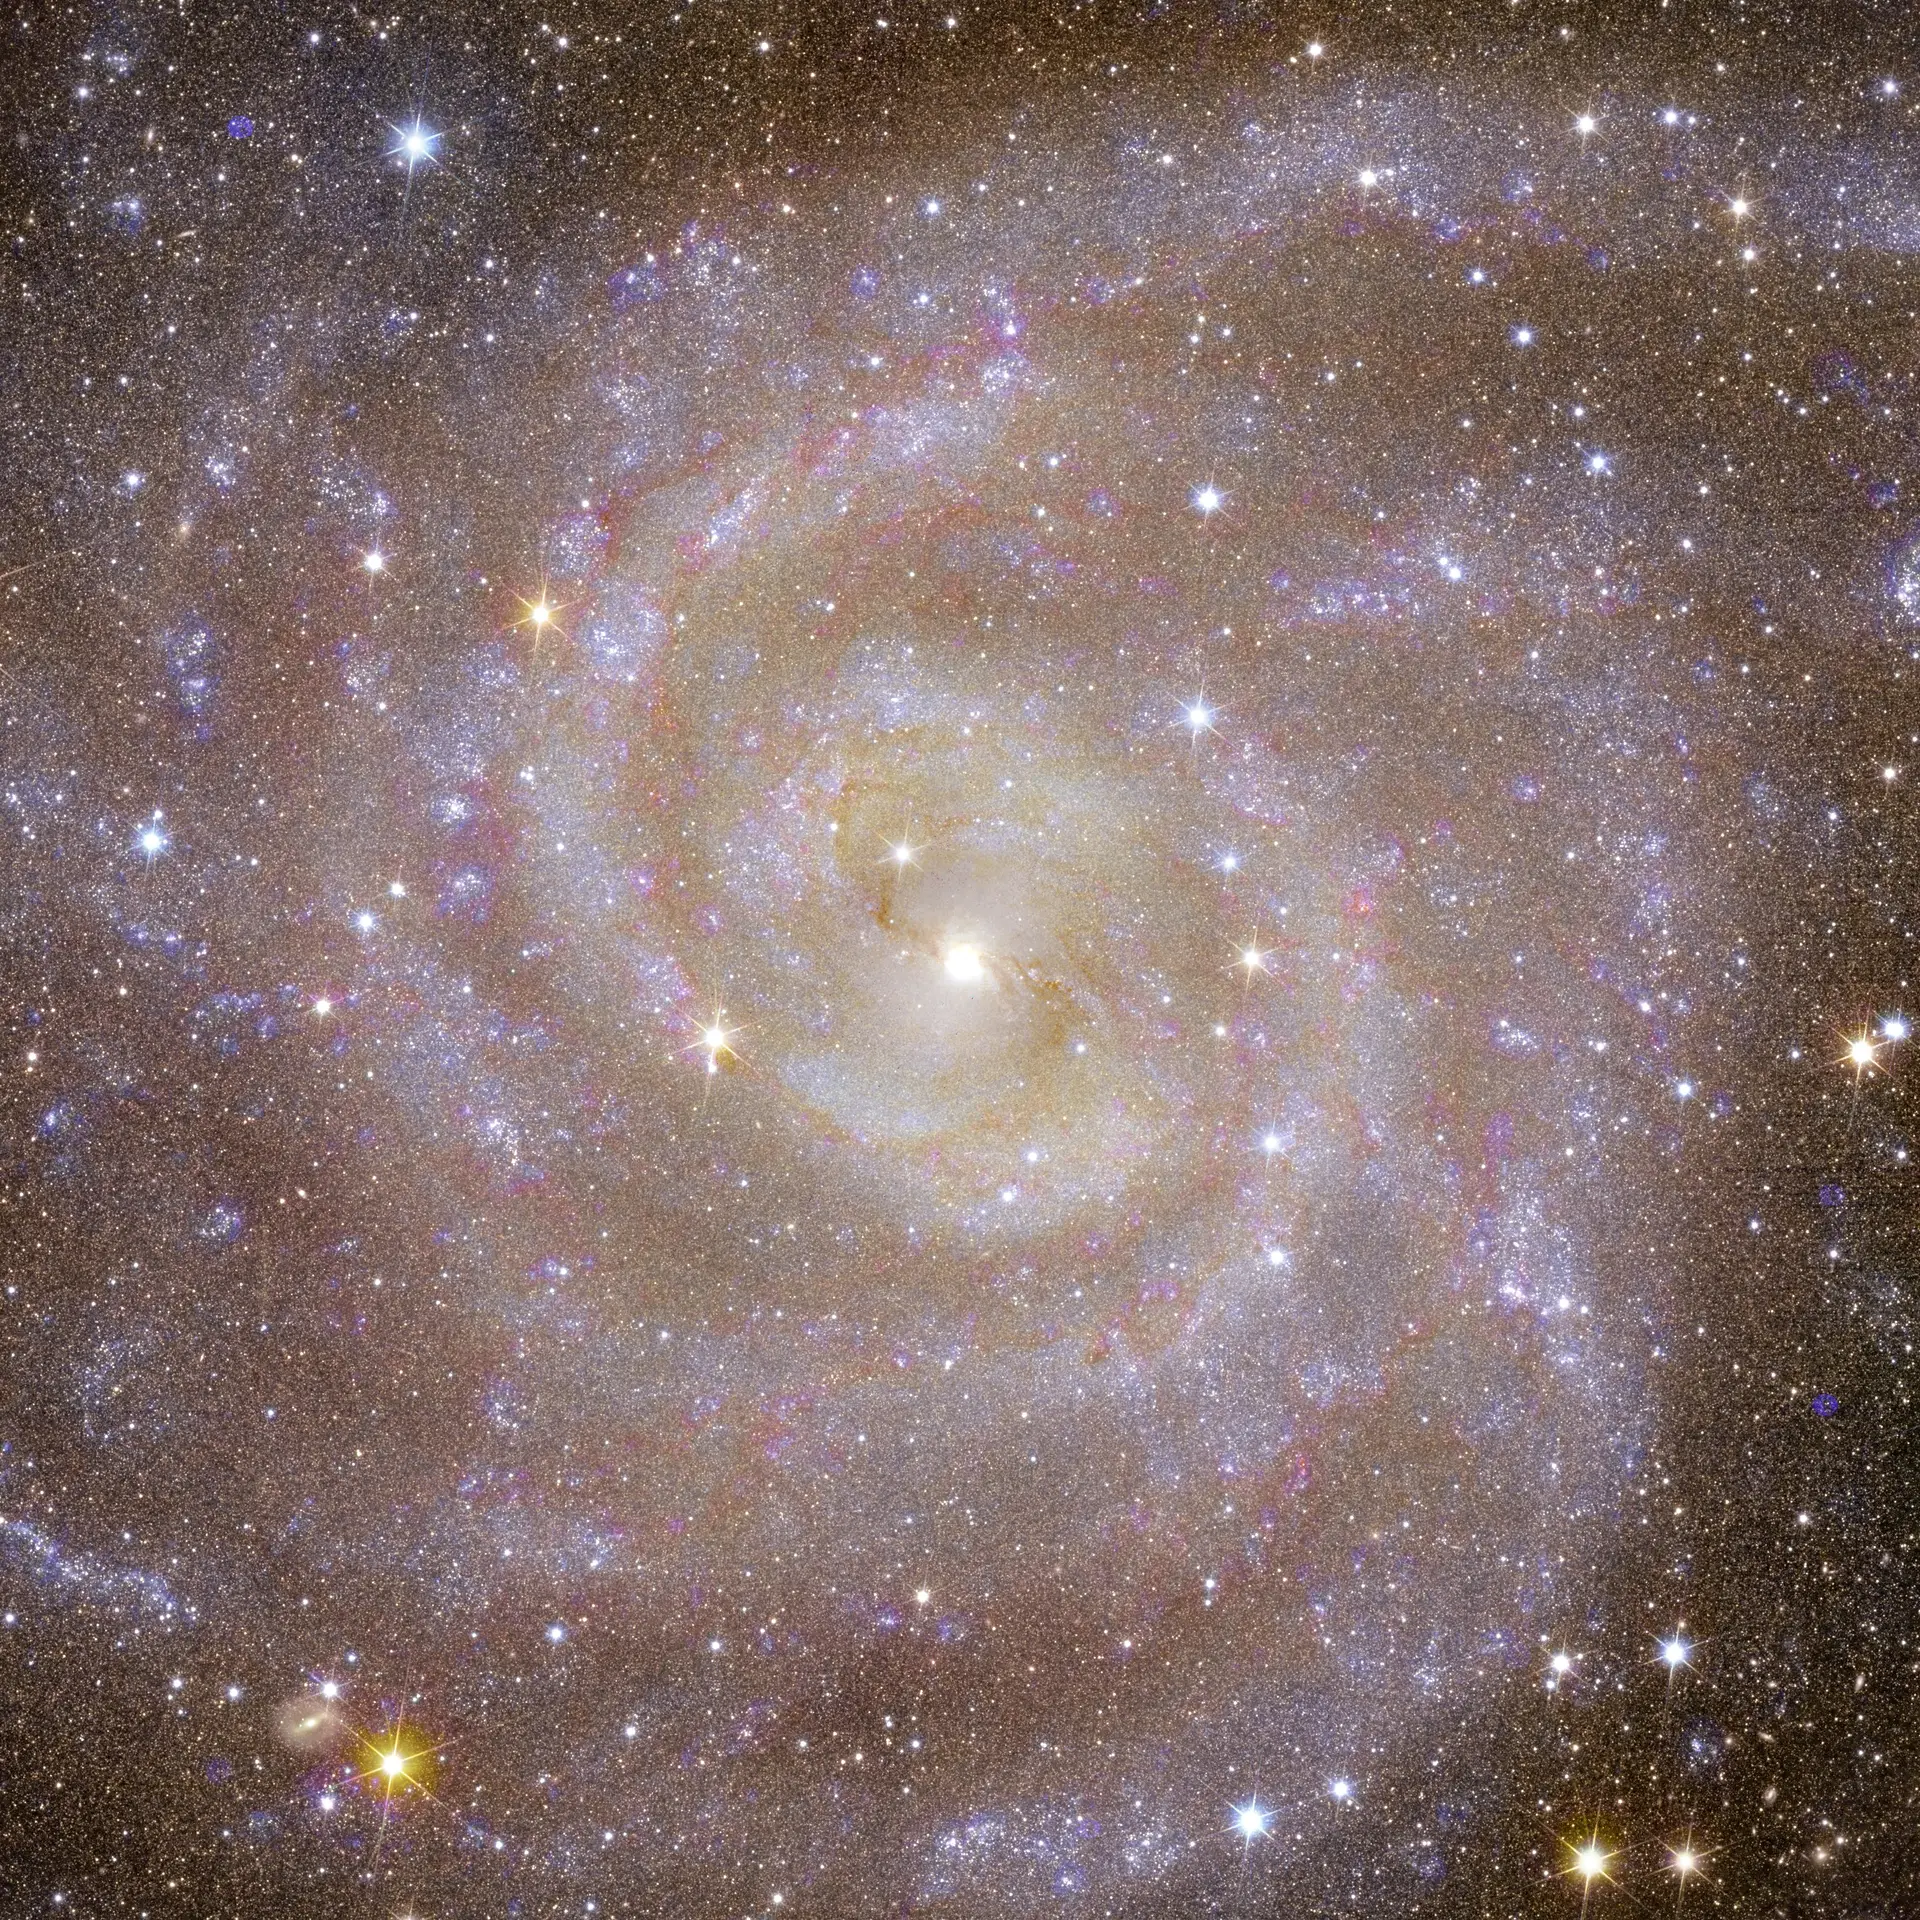 Galáxia Oculta, Galáxia espiral IC 342 ou Caldwell 5